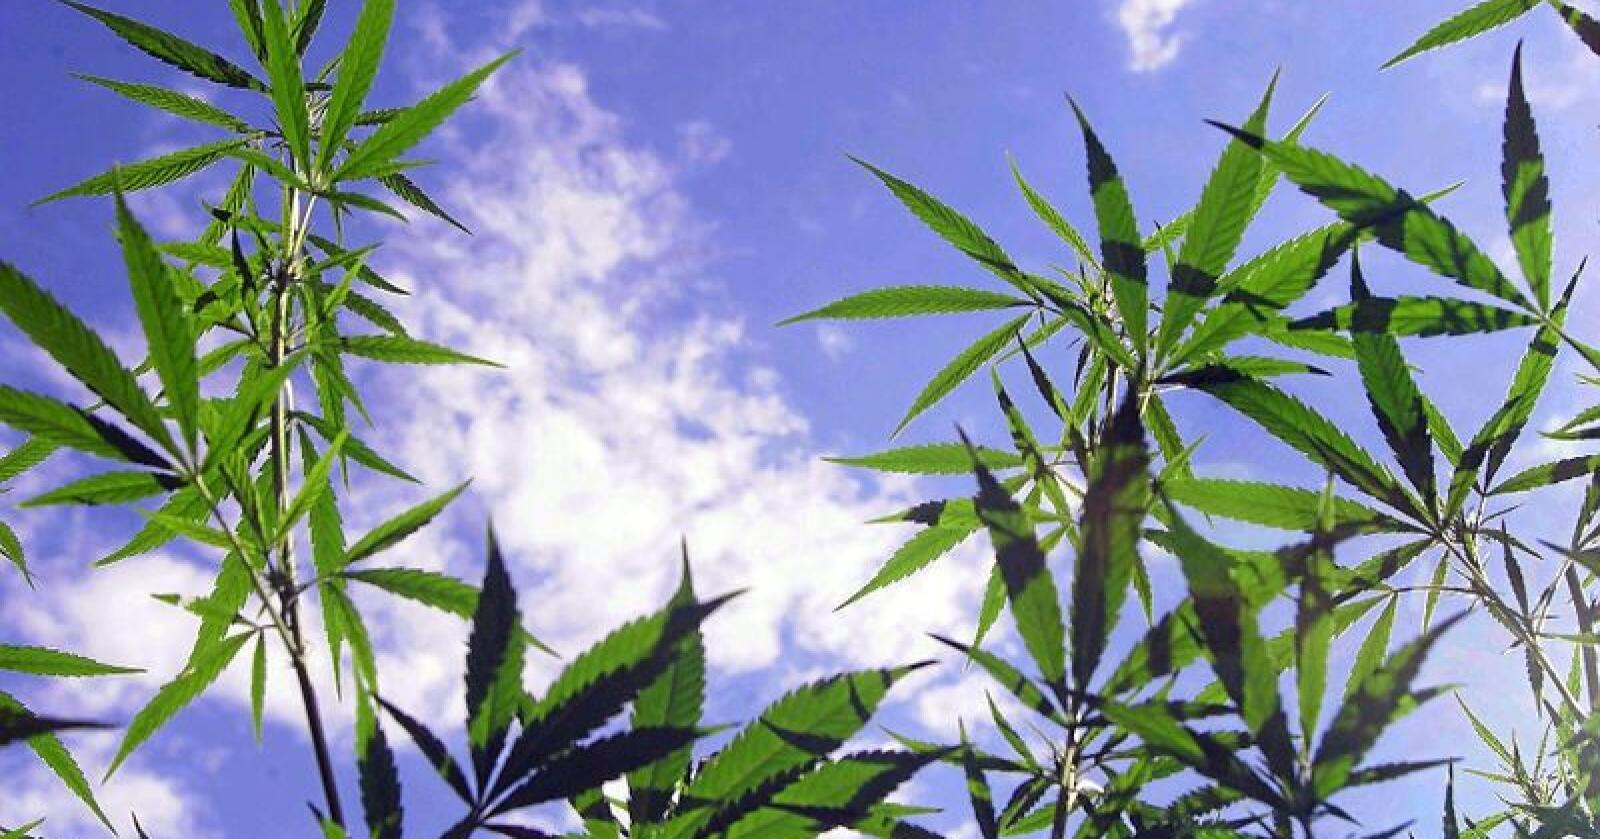 Dyrking av cannabis kan bli fremtiden for pelsdyrbønder, ifølge Venstre-politiker. Foto: Colourbox